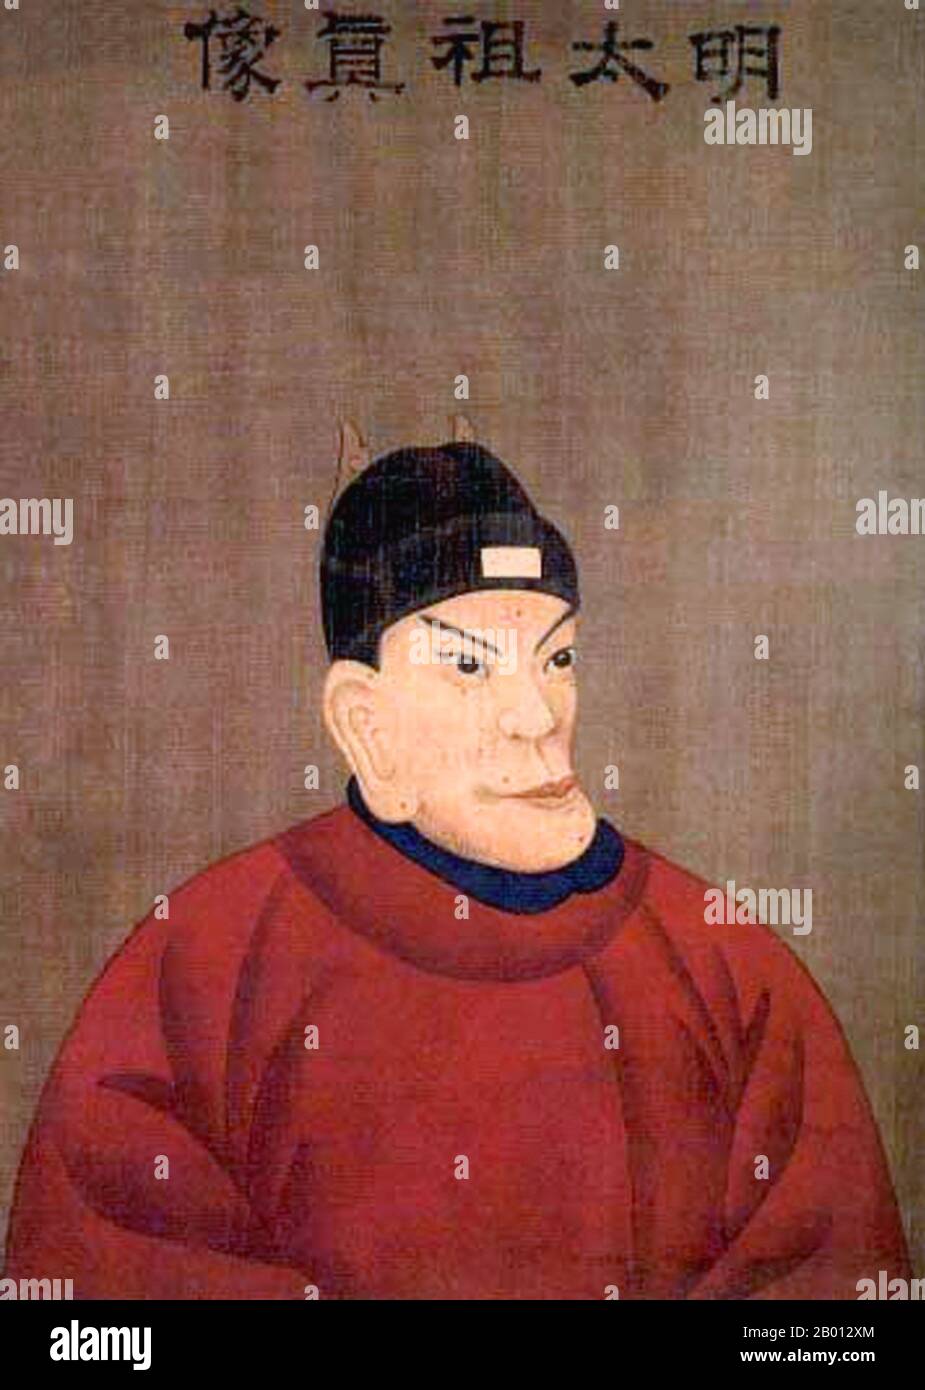 Cina: L'imperatore Hongwu, 1 ° sovrano della dinastia Ming (r. 1368-1398). Pittura a mano, dinastia Qing. L'imperatore Hongwu, nome personale Zhu Yuanzhang e nome del tempio Taizu, fu il fondatore e il primo imperatore (1368–98) della dinastia Ming della Cina. Il suo nome d'epoca, Hongwu, significa 'vastamente marziale'. A metà del XIV secolo, con carestie, piaghe e rivolte contadine che si sussurrano in tutta la Cina, Zhu divenne leader di un esercito che conquistò la Cina, ponendo fine alla dinastia Yuan e costringendo i Mongoli a ritirarsi nelle steppe mongolo. Foto Stock